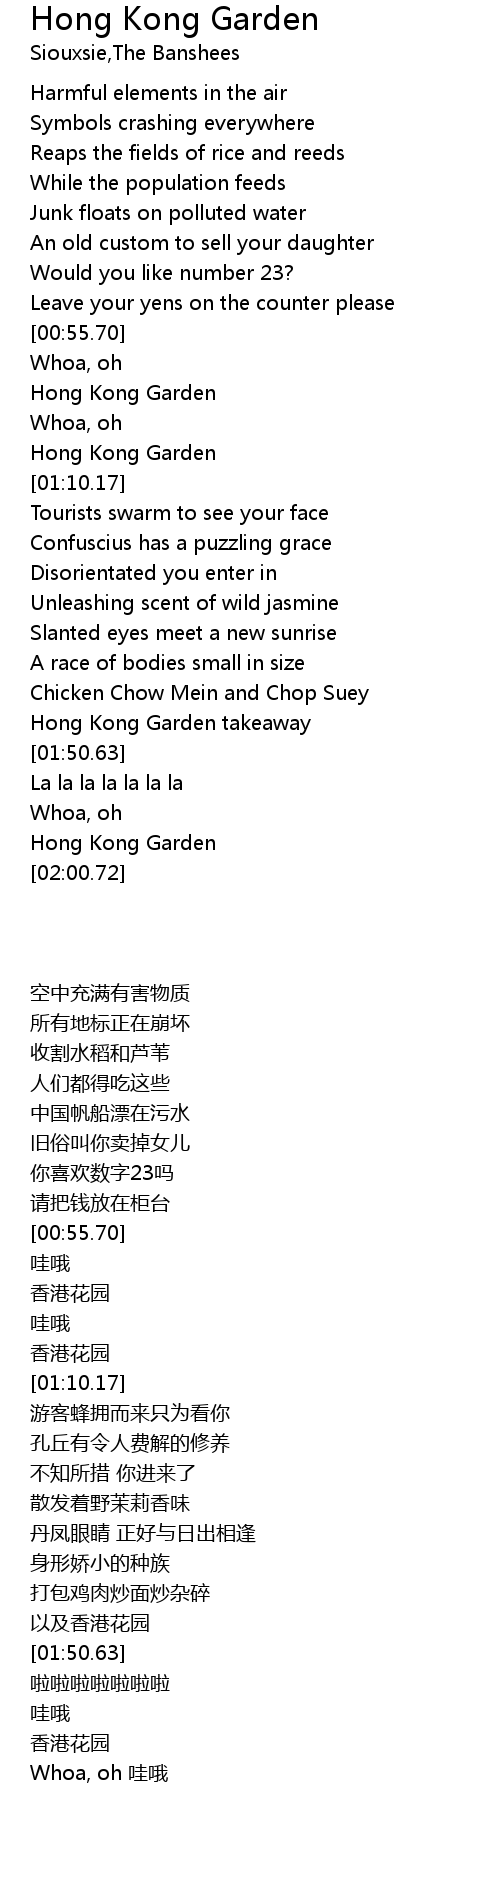 Hong Kong Garden Lyrics - Follow Lyrics